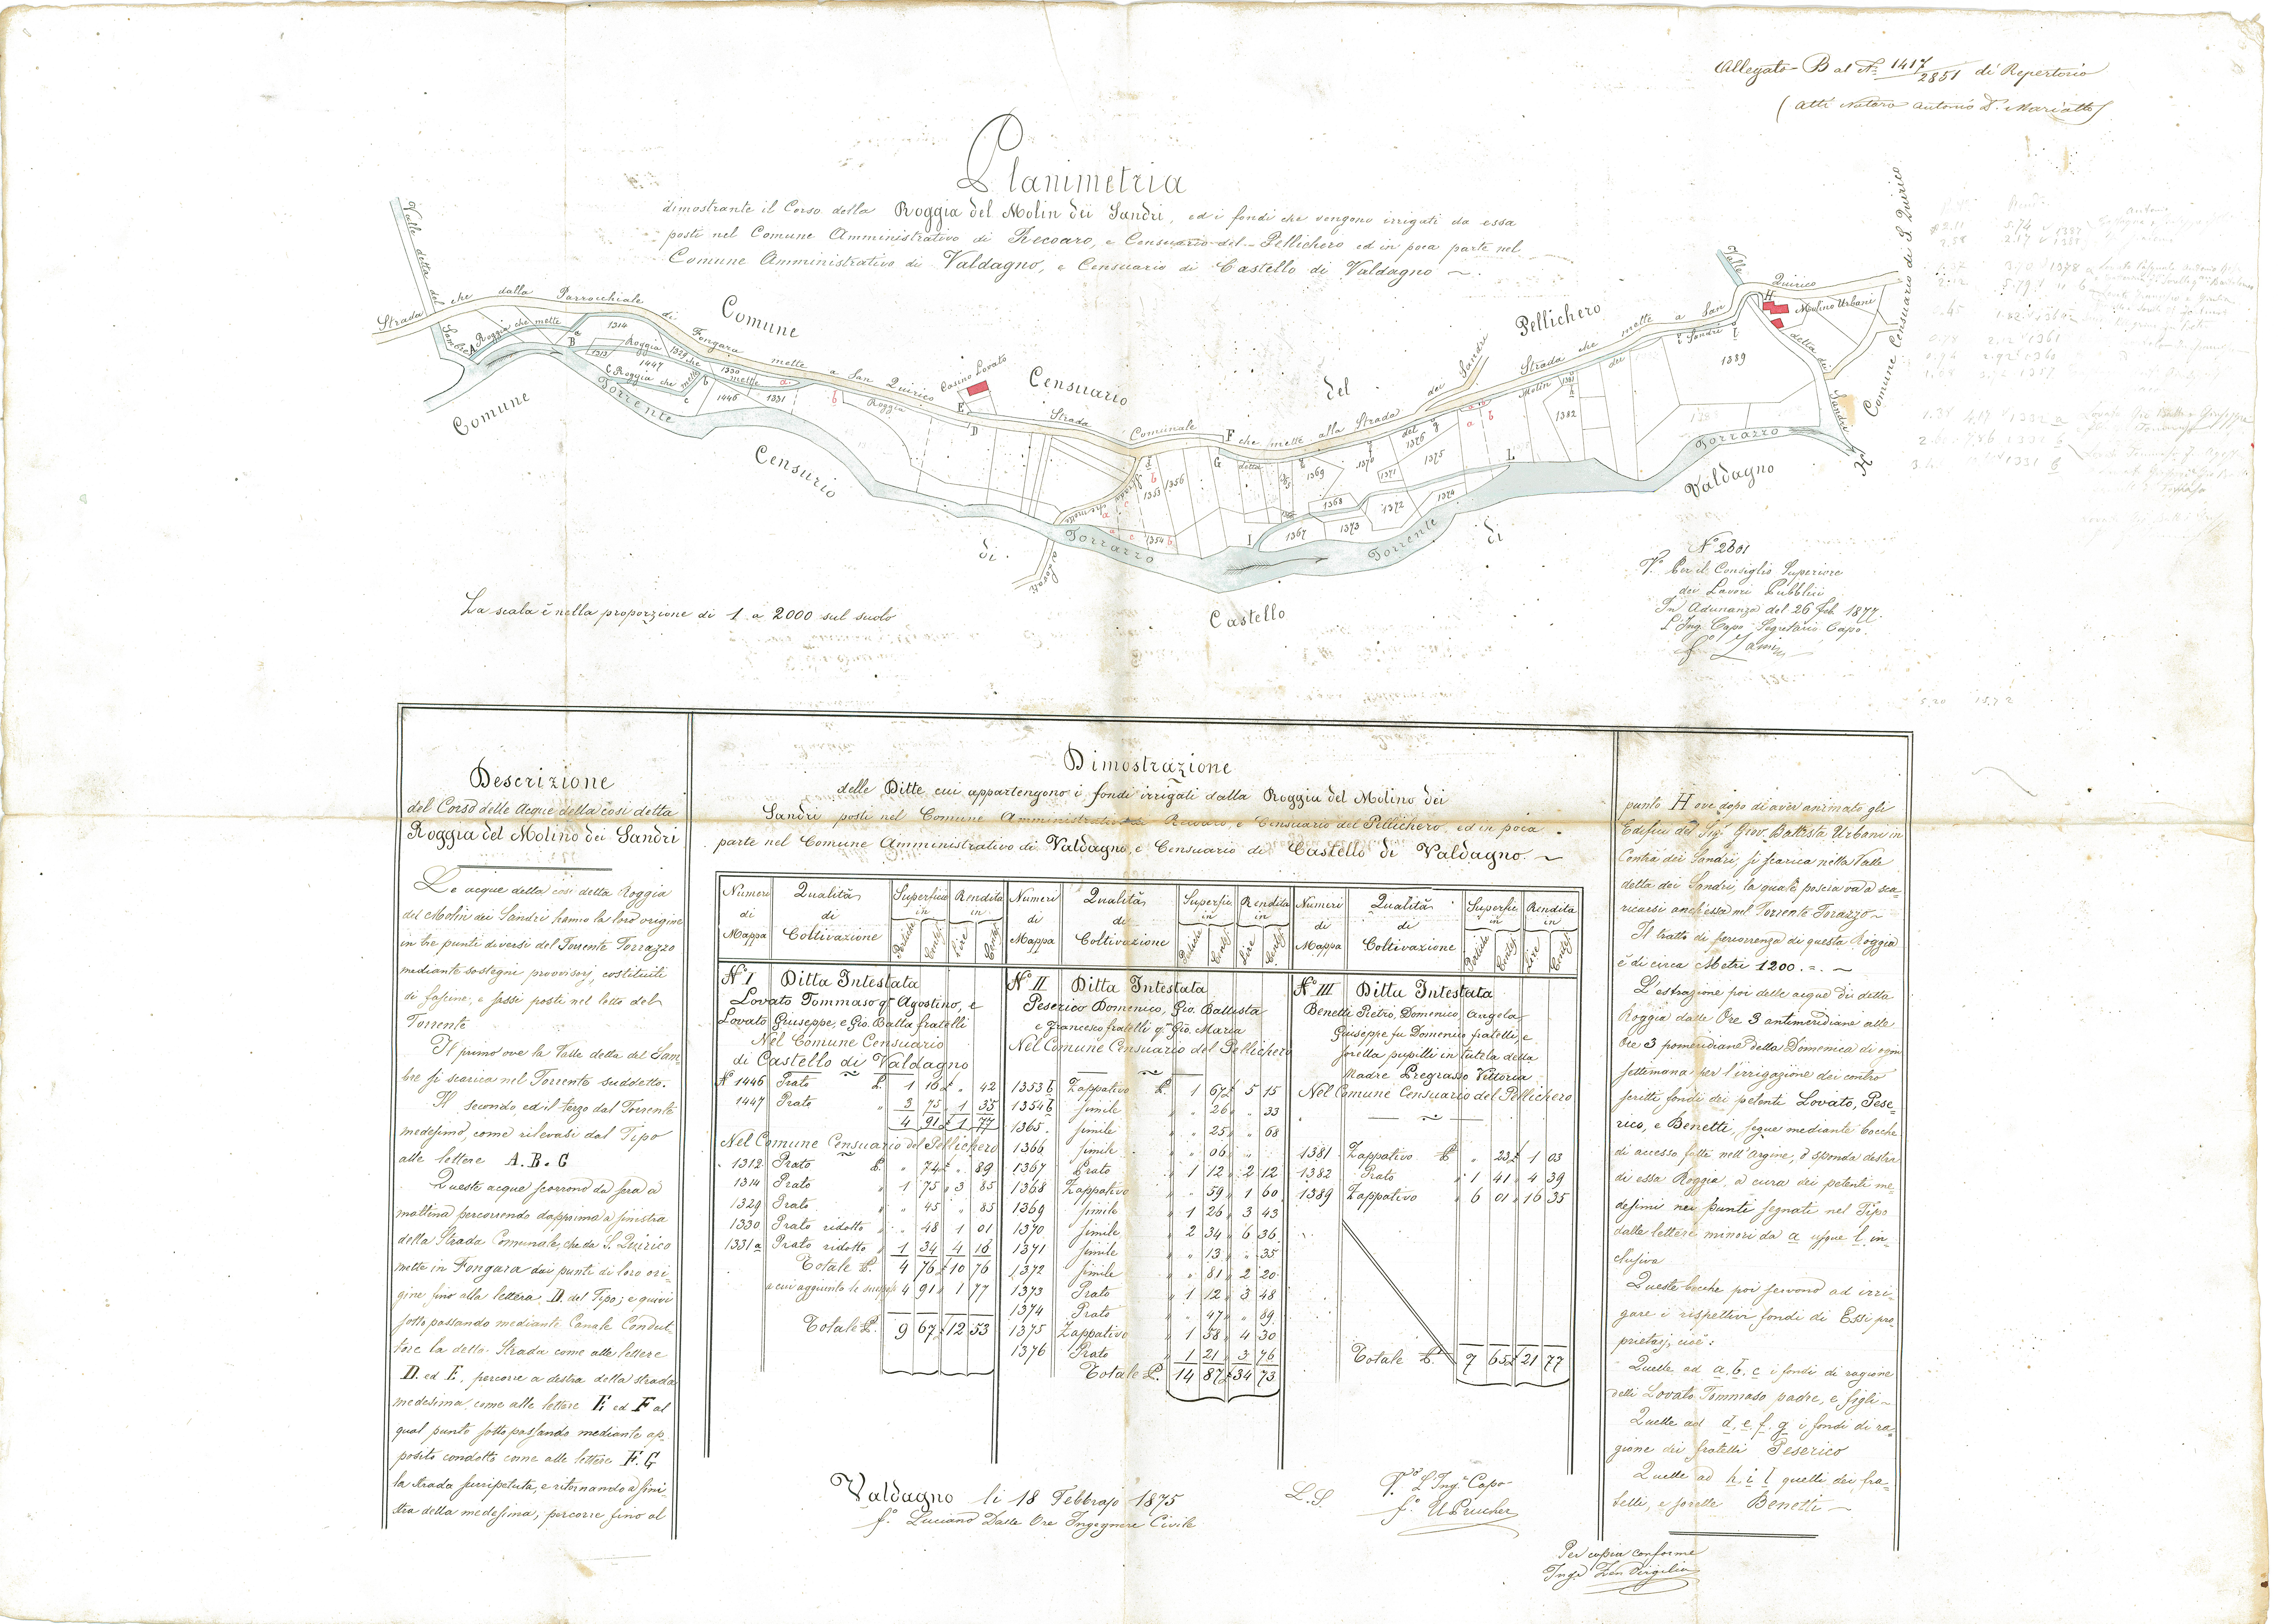 2. Planimetria dimostrante il corso della roggia del Mulino dei Sandri dell’ing. L. Dalle Ore (1875)